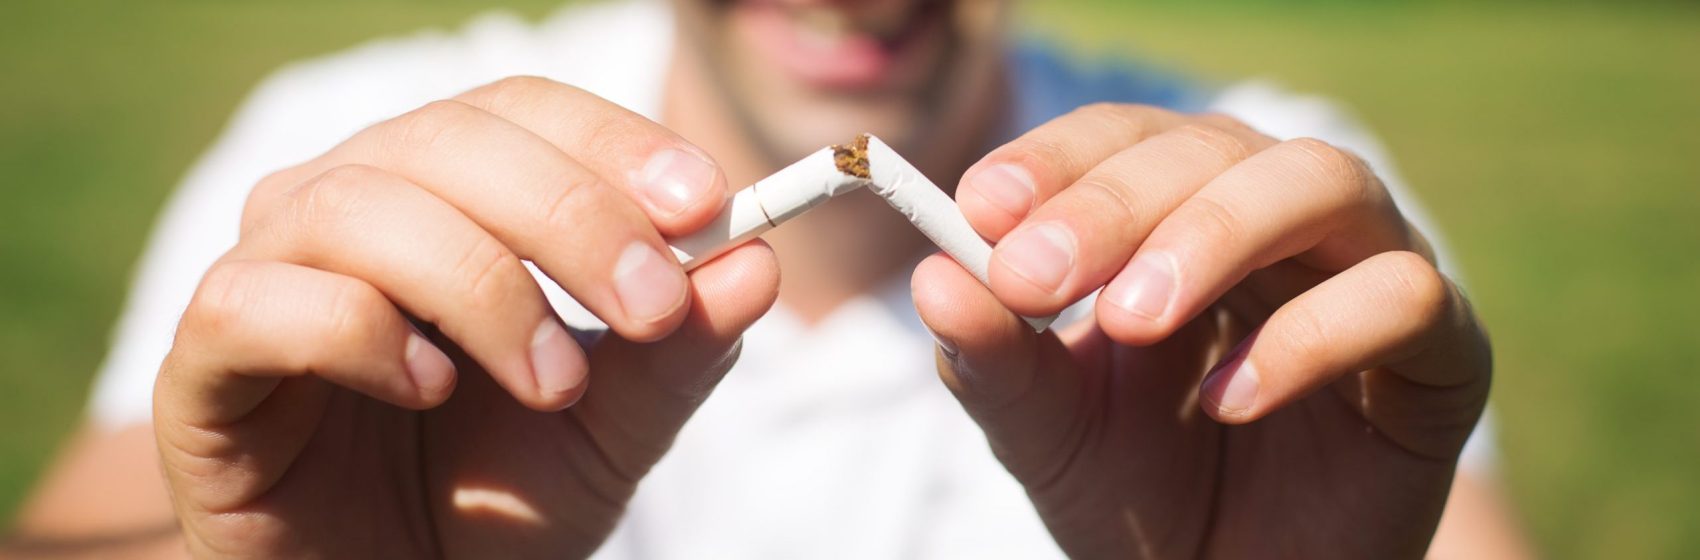 31/05 – Werelddag zonder tabak –  Stoppen met roken: een overbodige luxe?